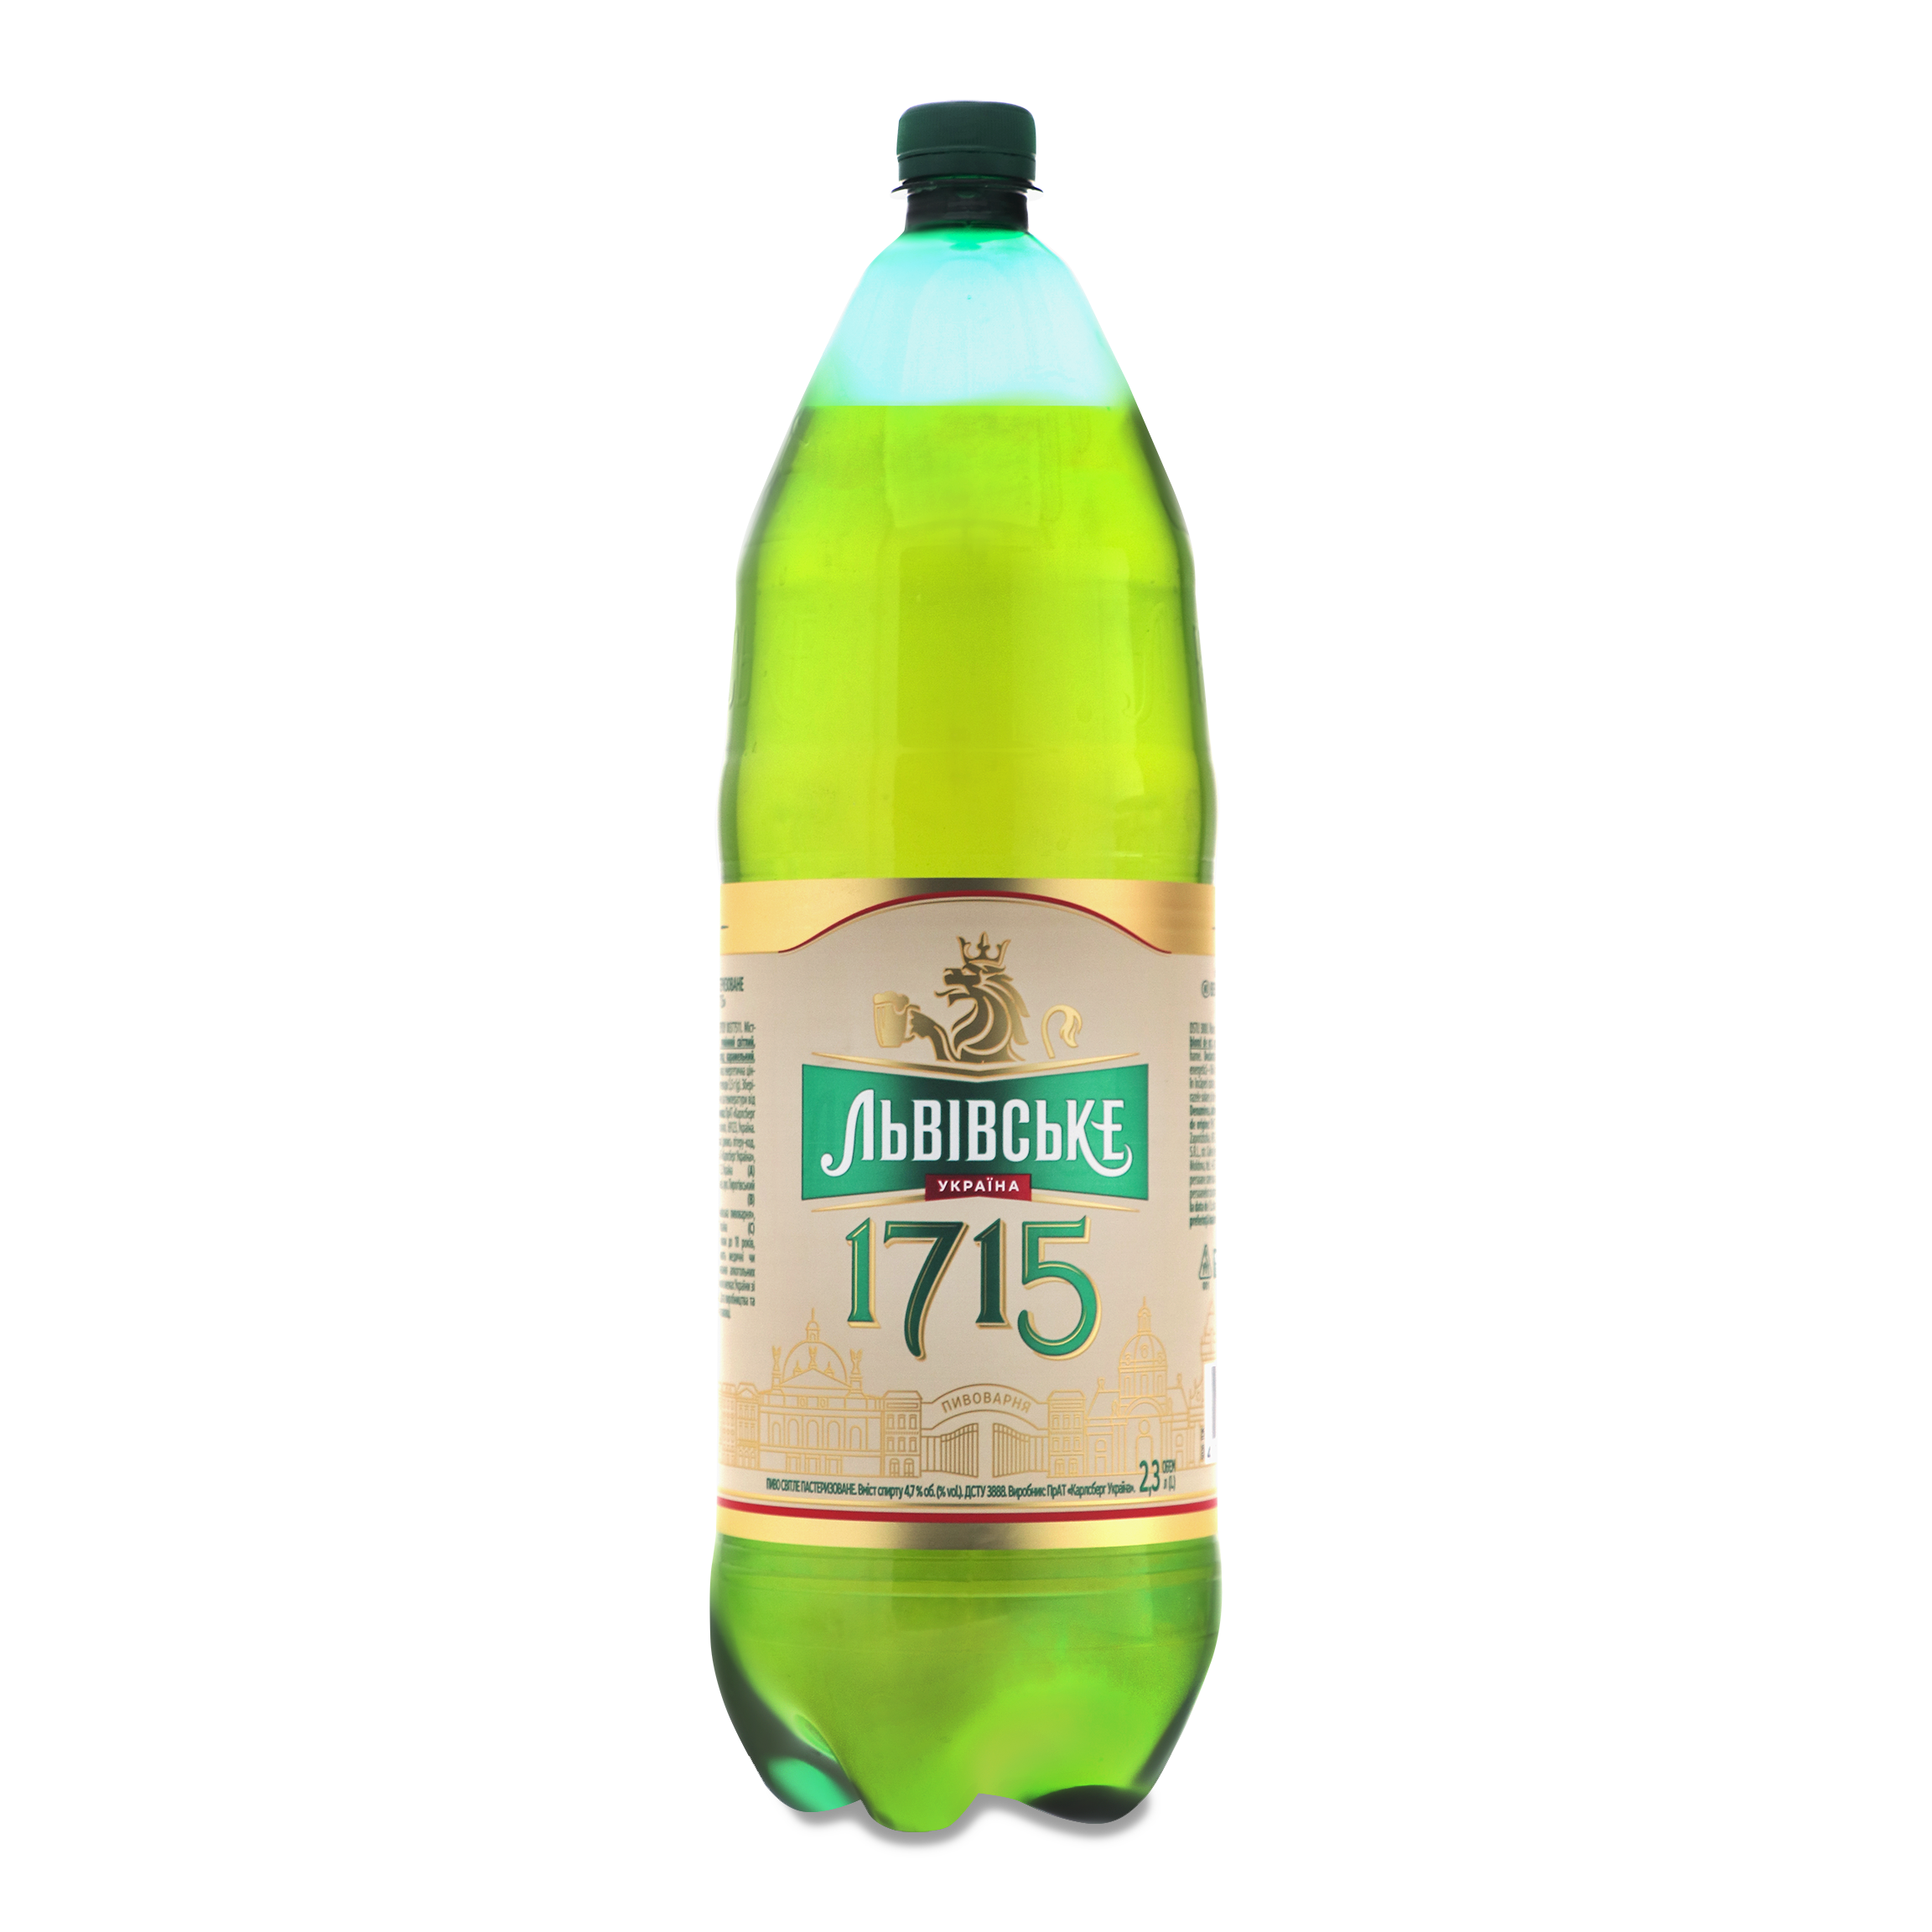 Lvivske 1715 Light Beer 4,7% 2,3l